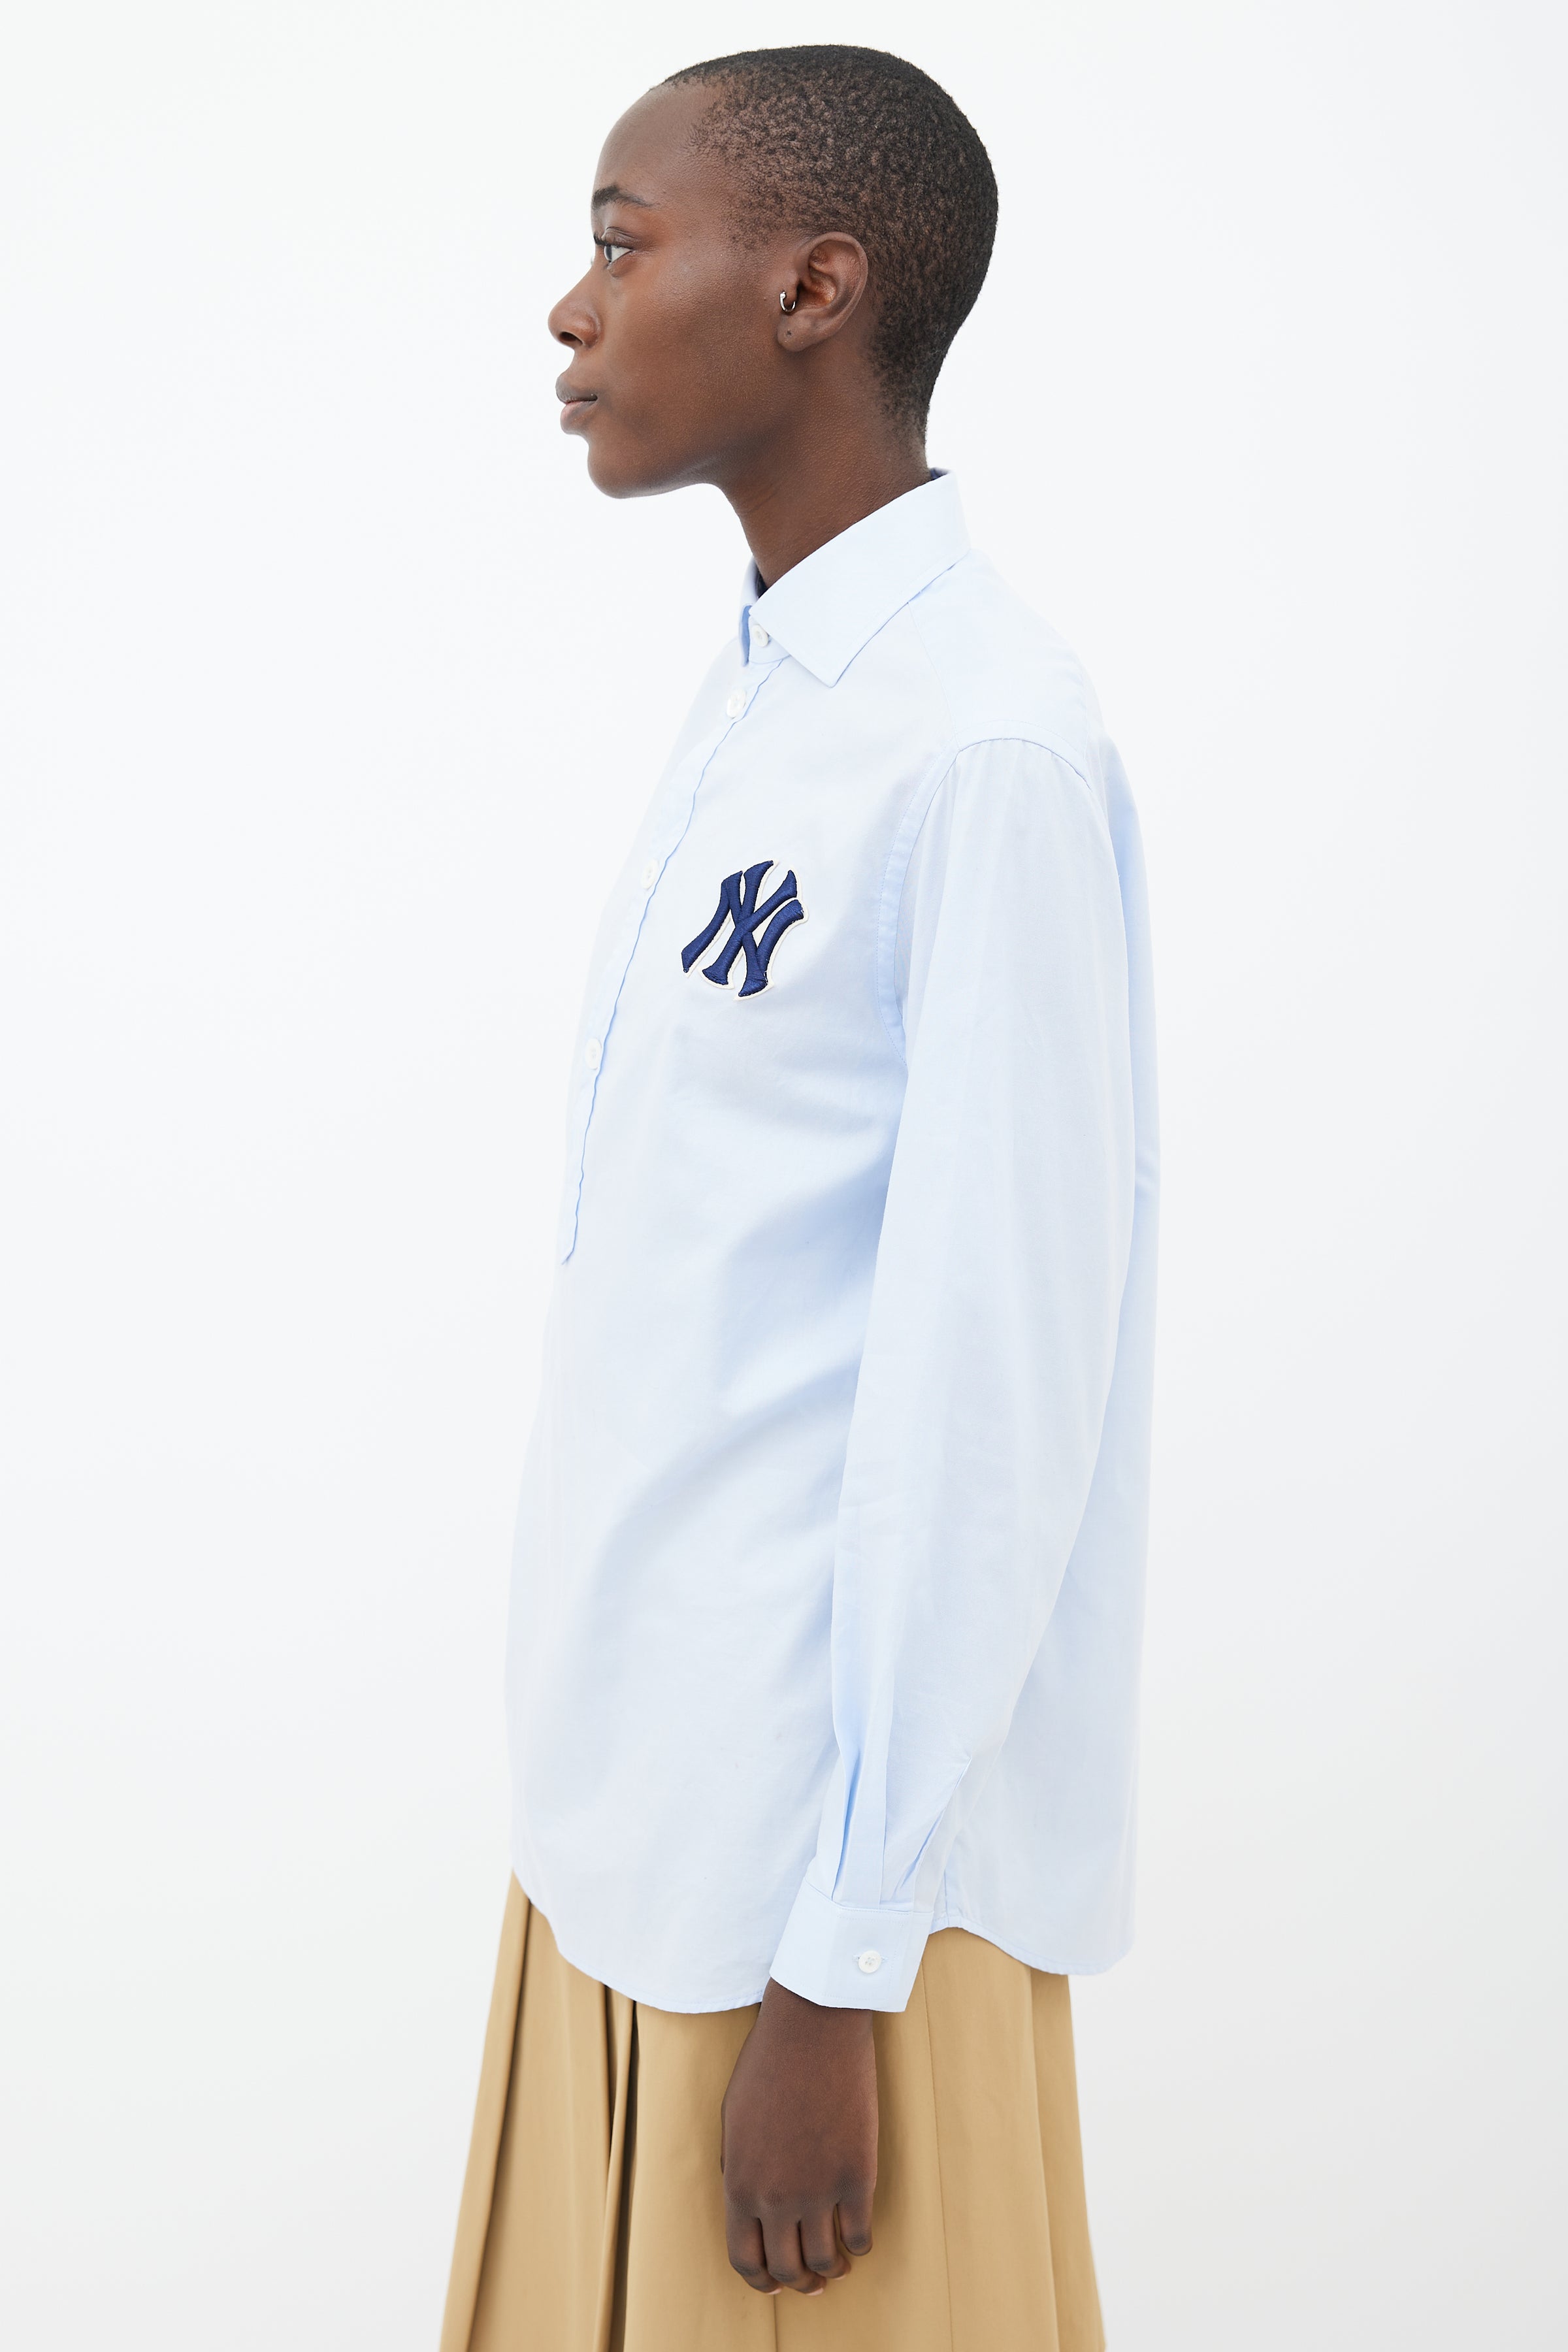 Gucci 2018 NY Yankees Bowling Shirt - Blue Casual Shirts, Clothing